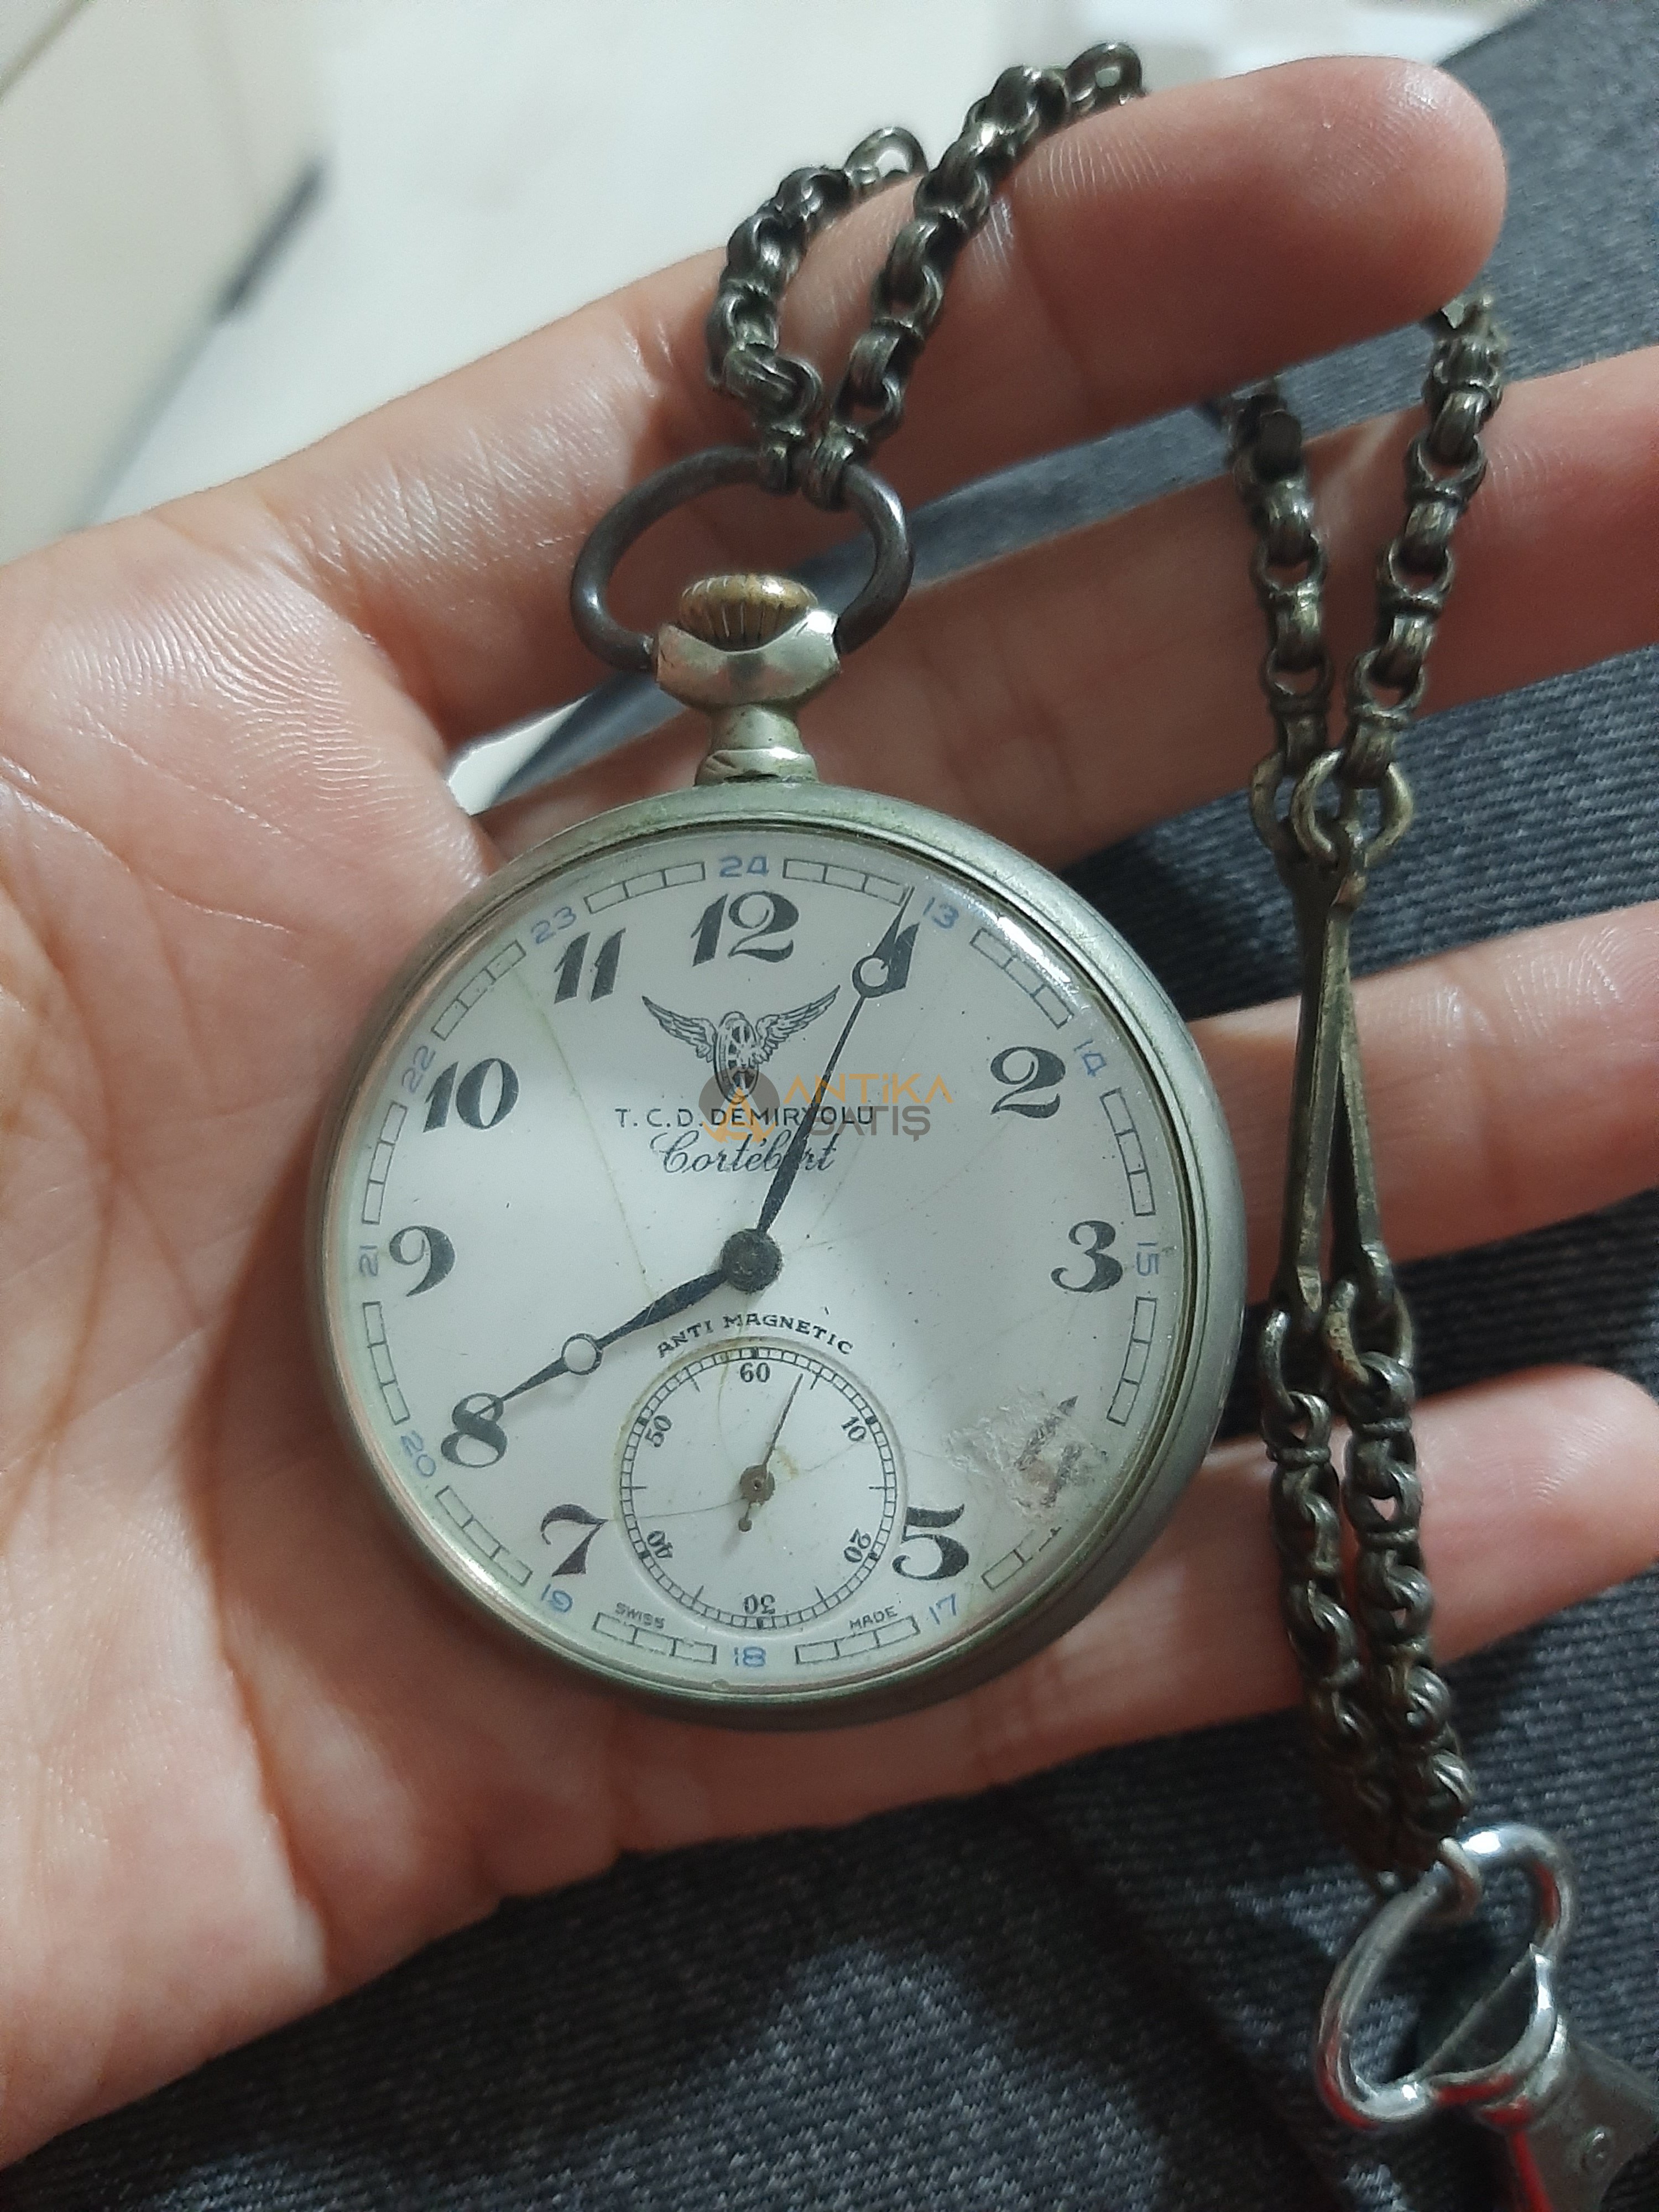 100 yıllık dede yadigarı Cortebert köstekli saat 